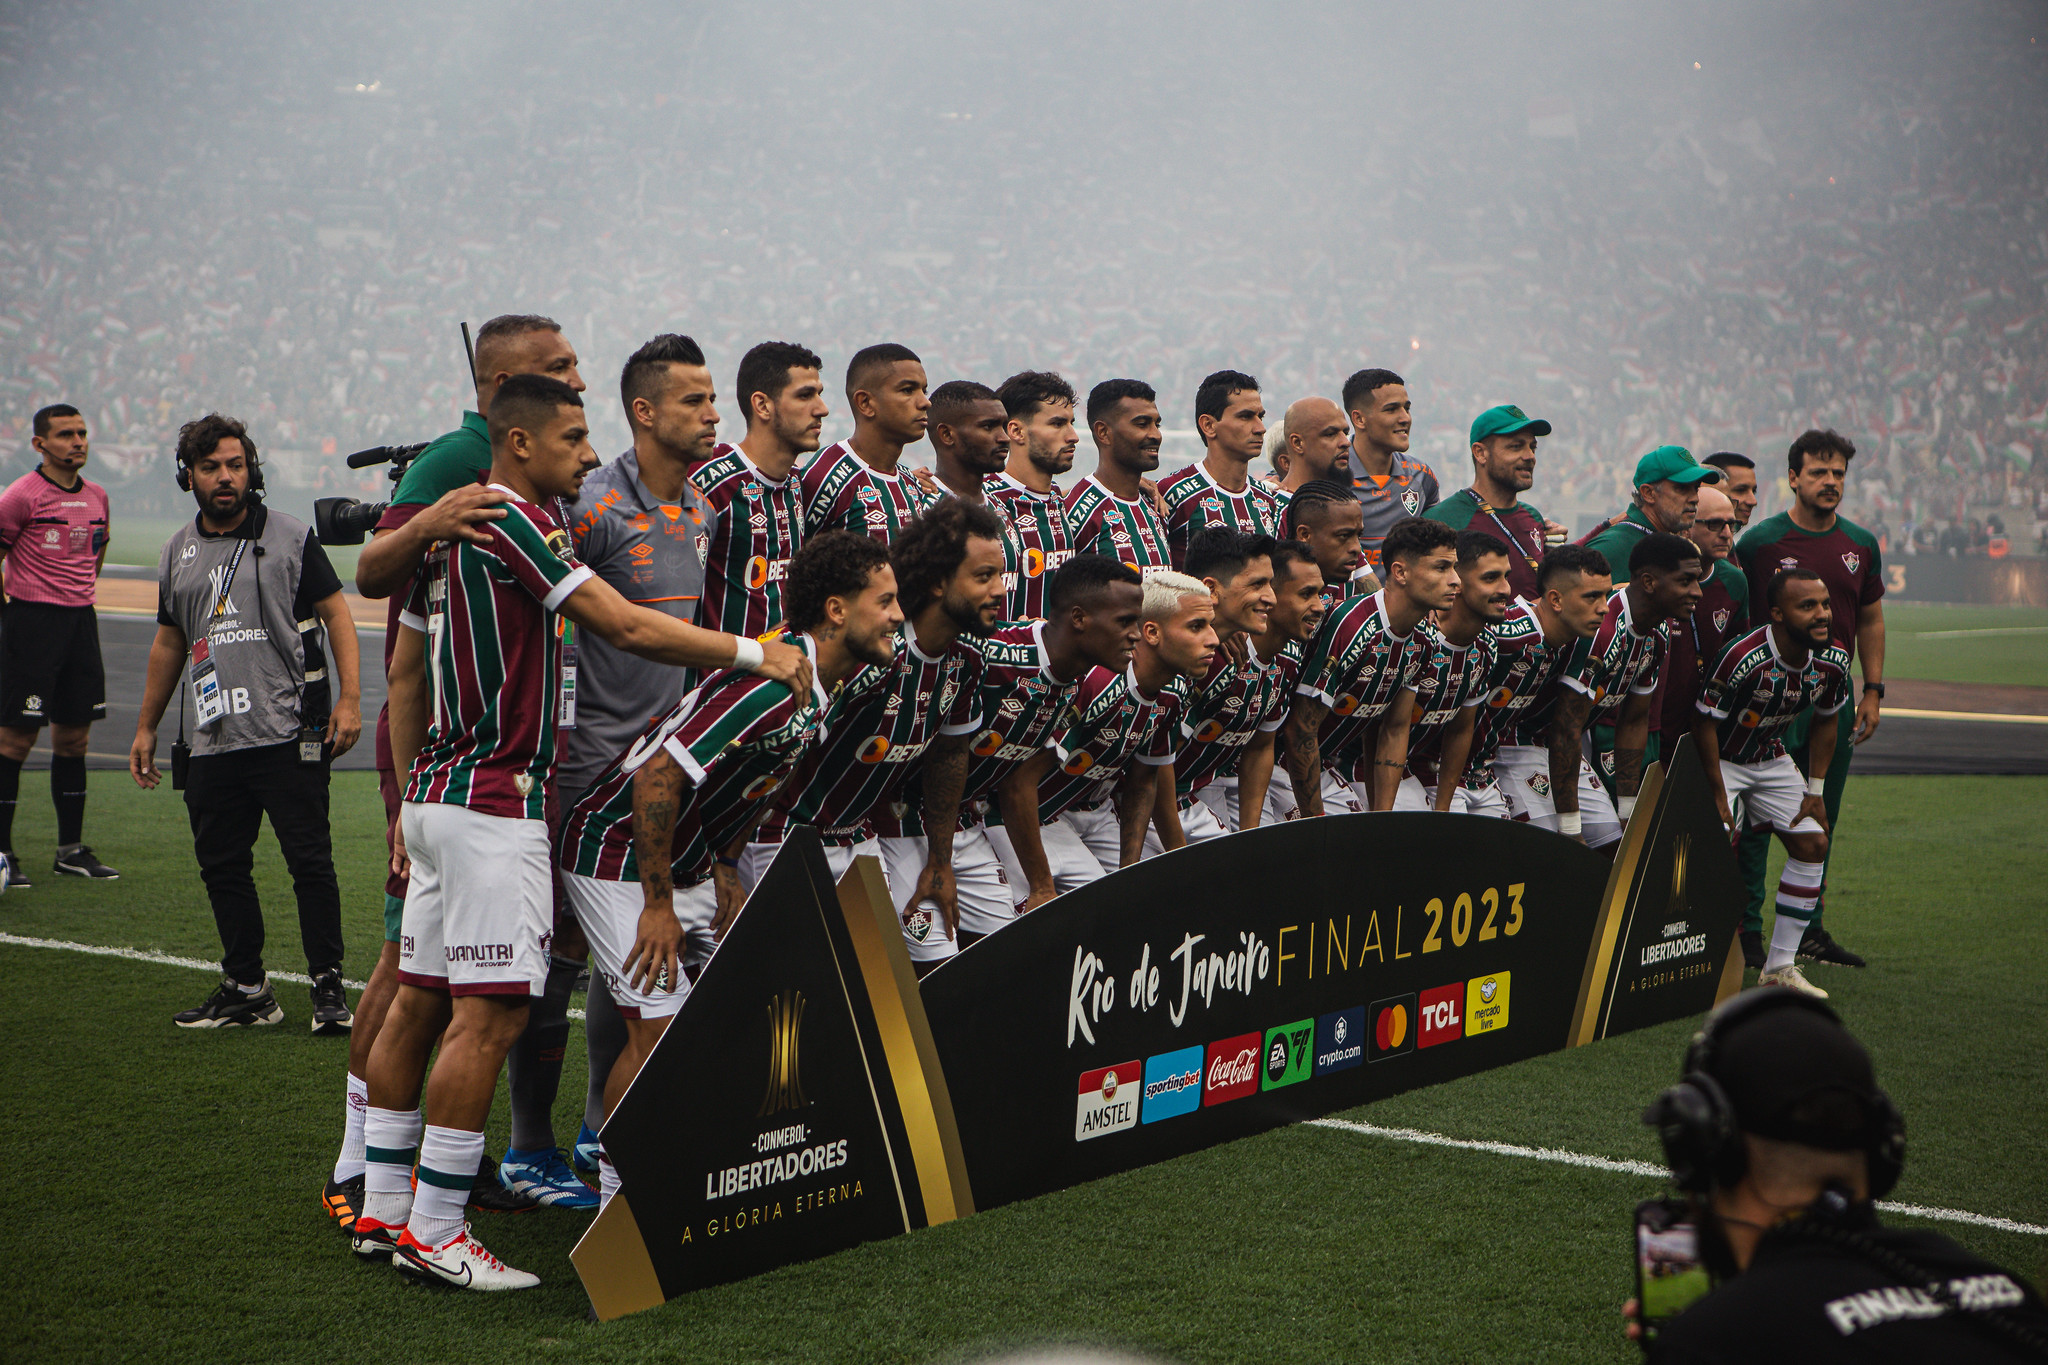 Mundial de Clubes em 2025: Com Palmeiras, Flamengo e Fluminense  confirmados, torneio 'aguarda' mais 3 equipes da América do Sul; conheça  classificados e critérios - Bolavip Brasil